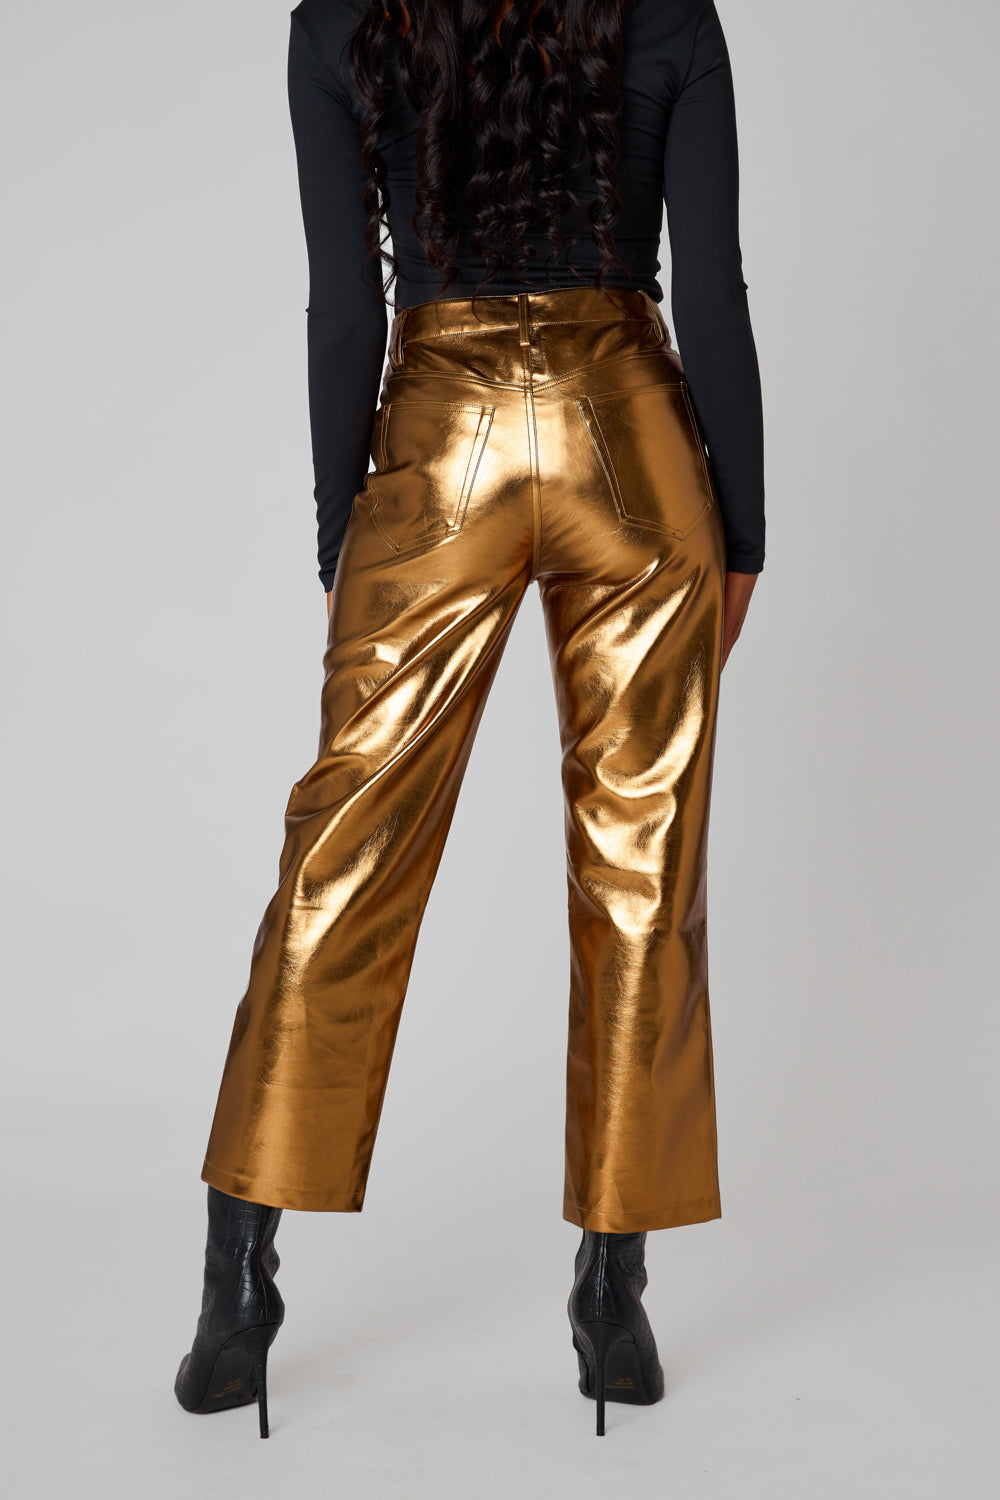 DESTRB Melody Gold Leather Pants Silver Metallic Pants Sexy